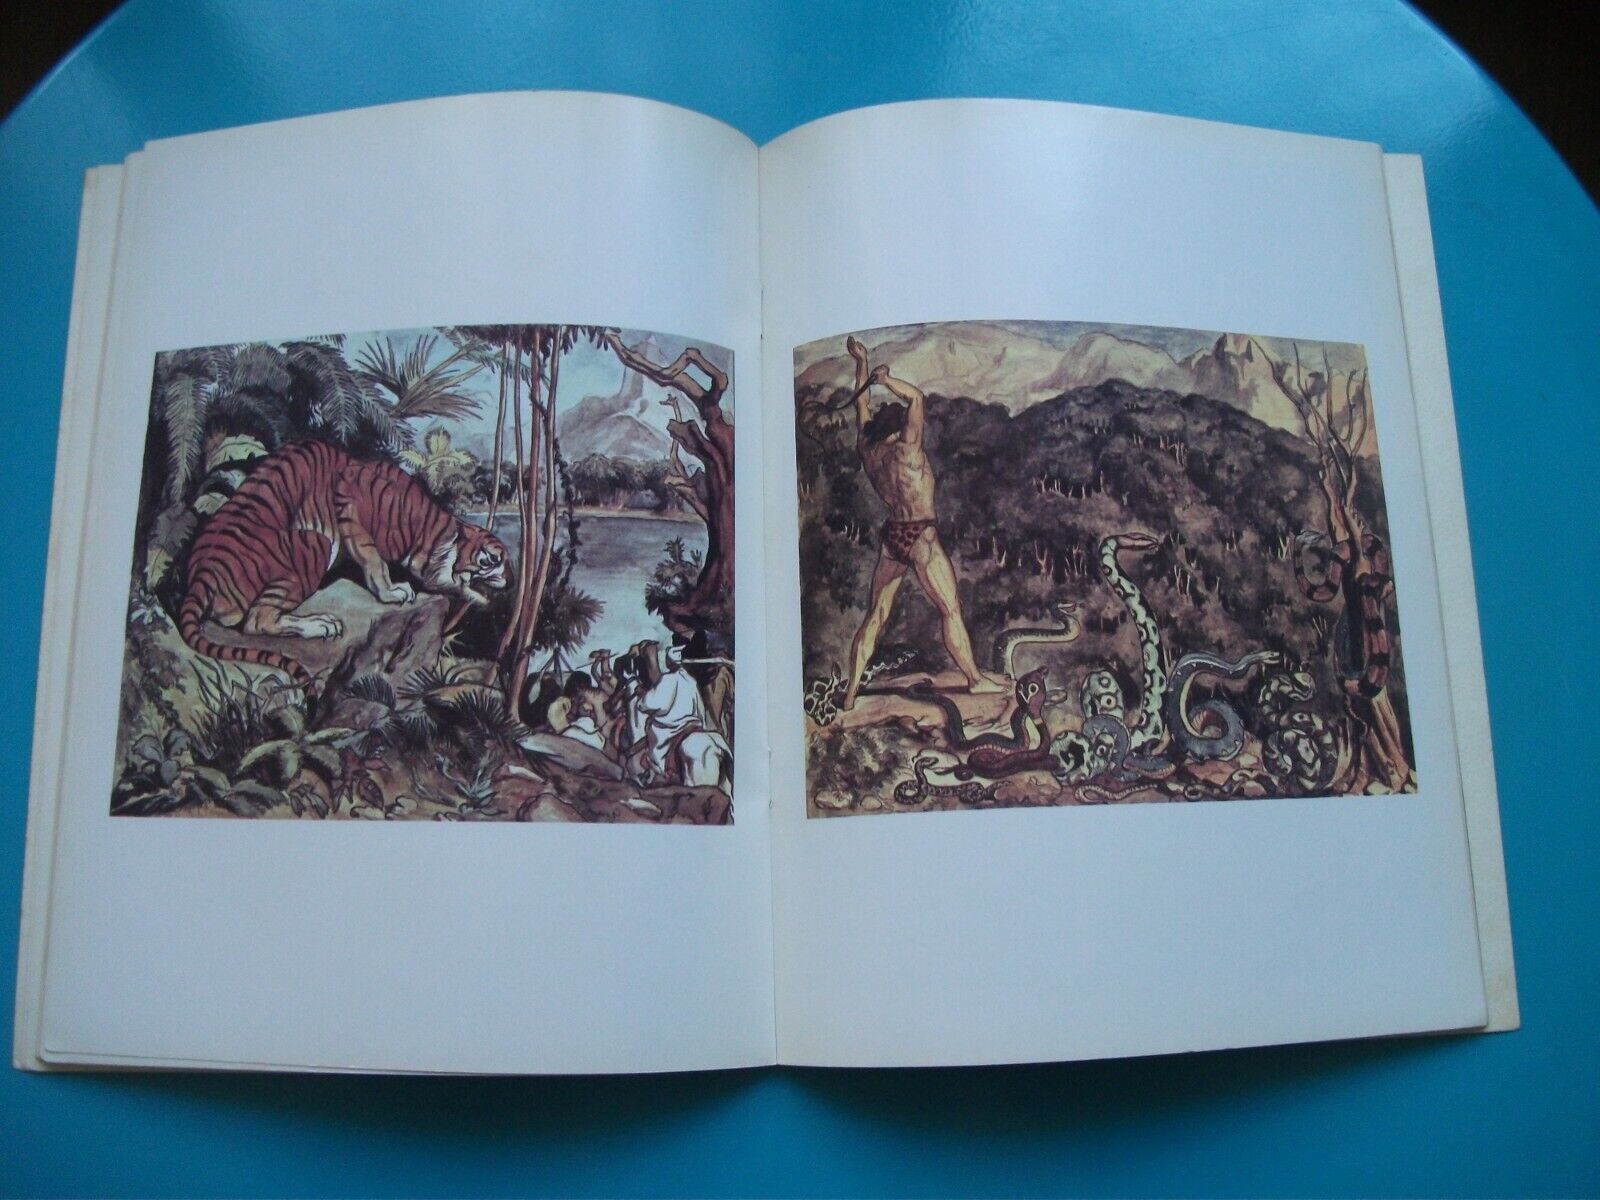 PAUL CUVELIER illustrations album les cahiers de la bande dessinée GLENAT 1974 - Livres anciens, de collection